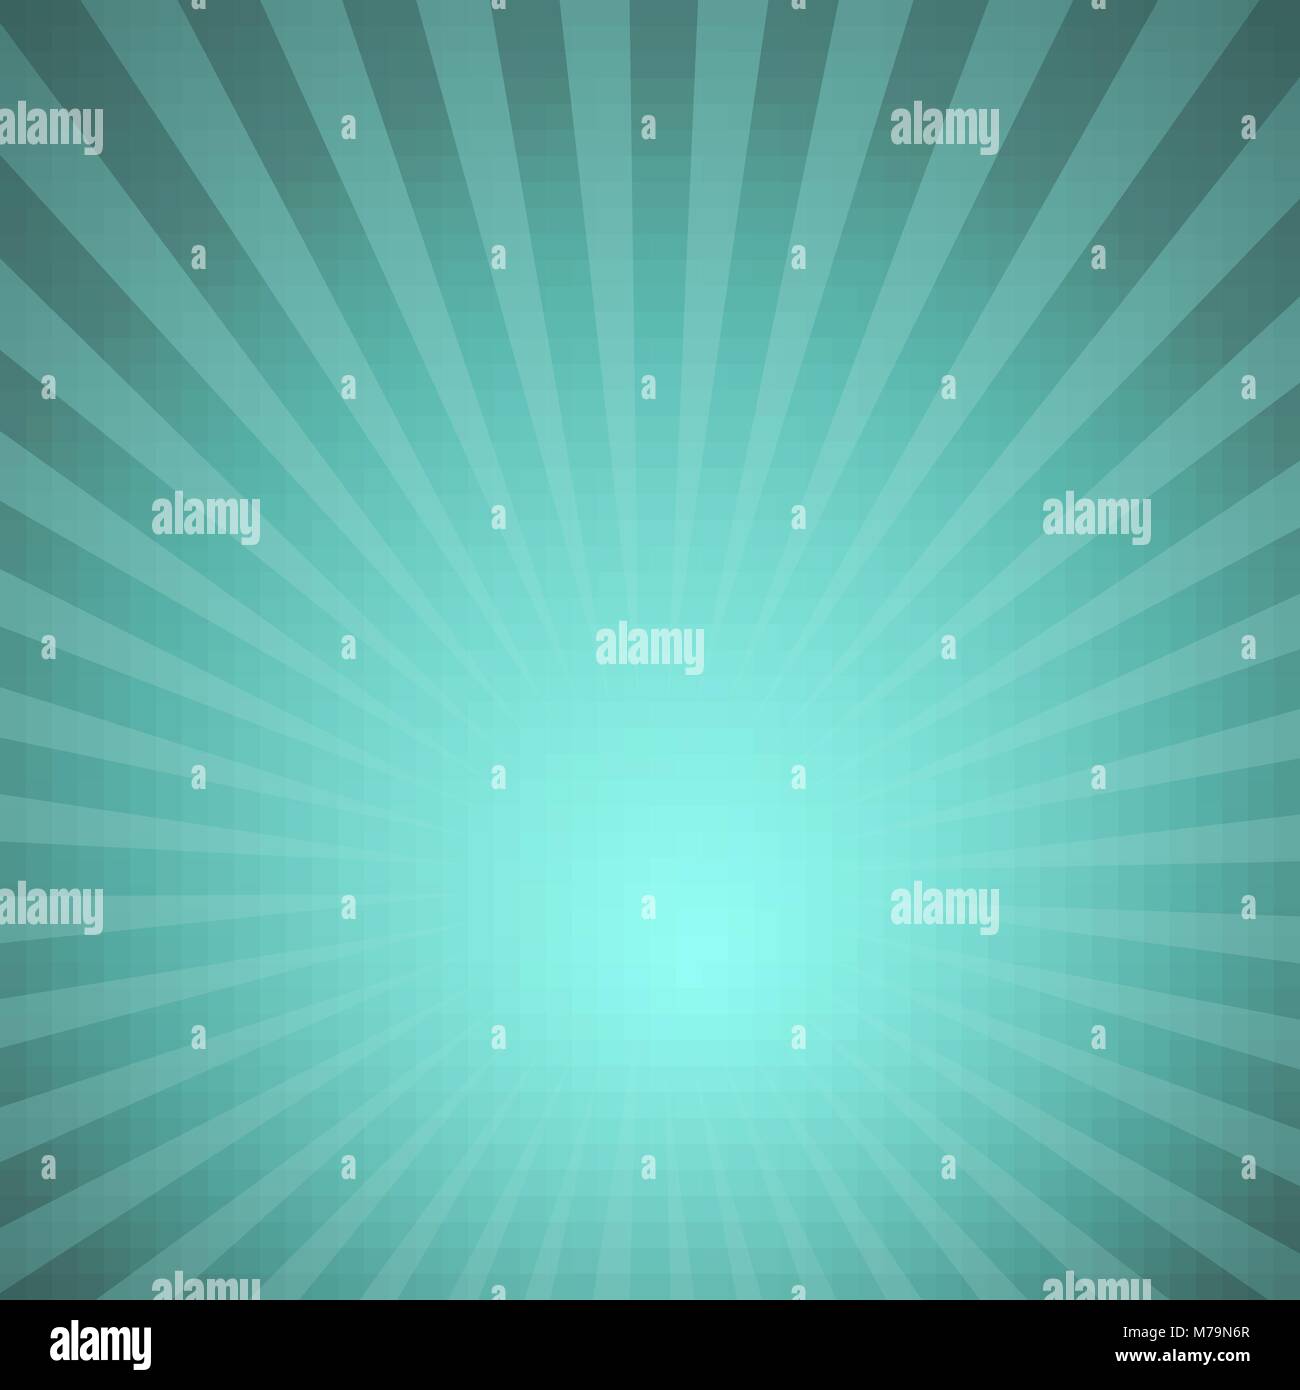 Sunburst grüne Strahlen Muster. Radiale Sonnenschliff ray Hintergrund Vector Illustration. Stock Vektor